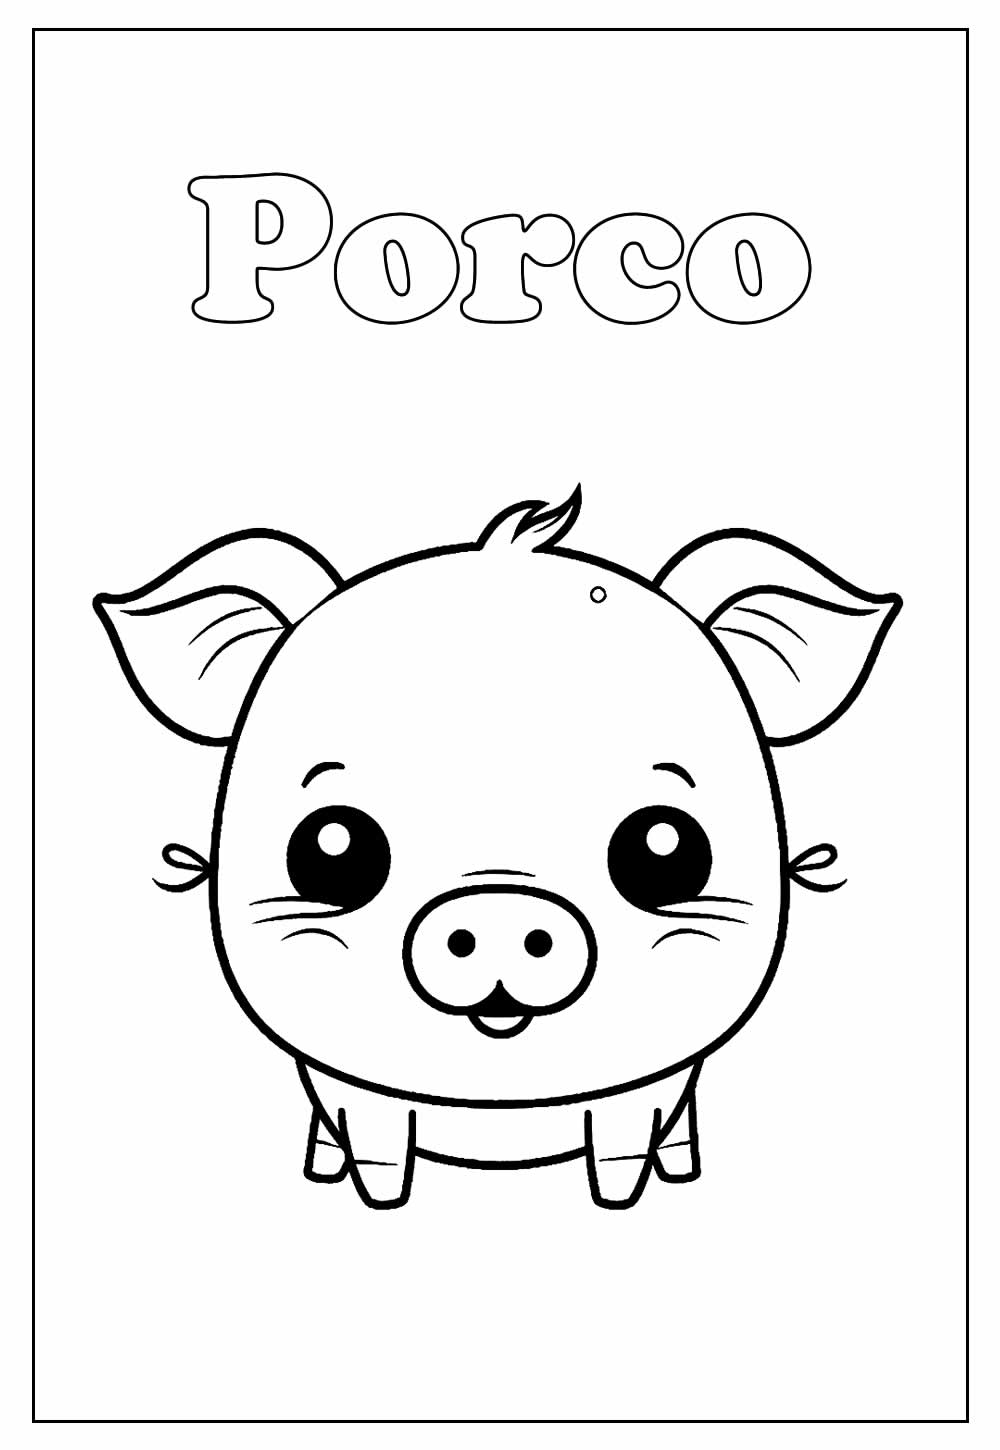 Porco Para Colorir - Dezenas de Imagens Para Adultos e Crianças